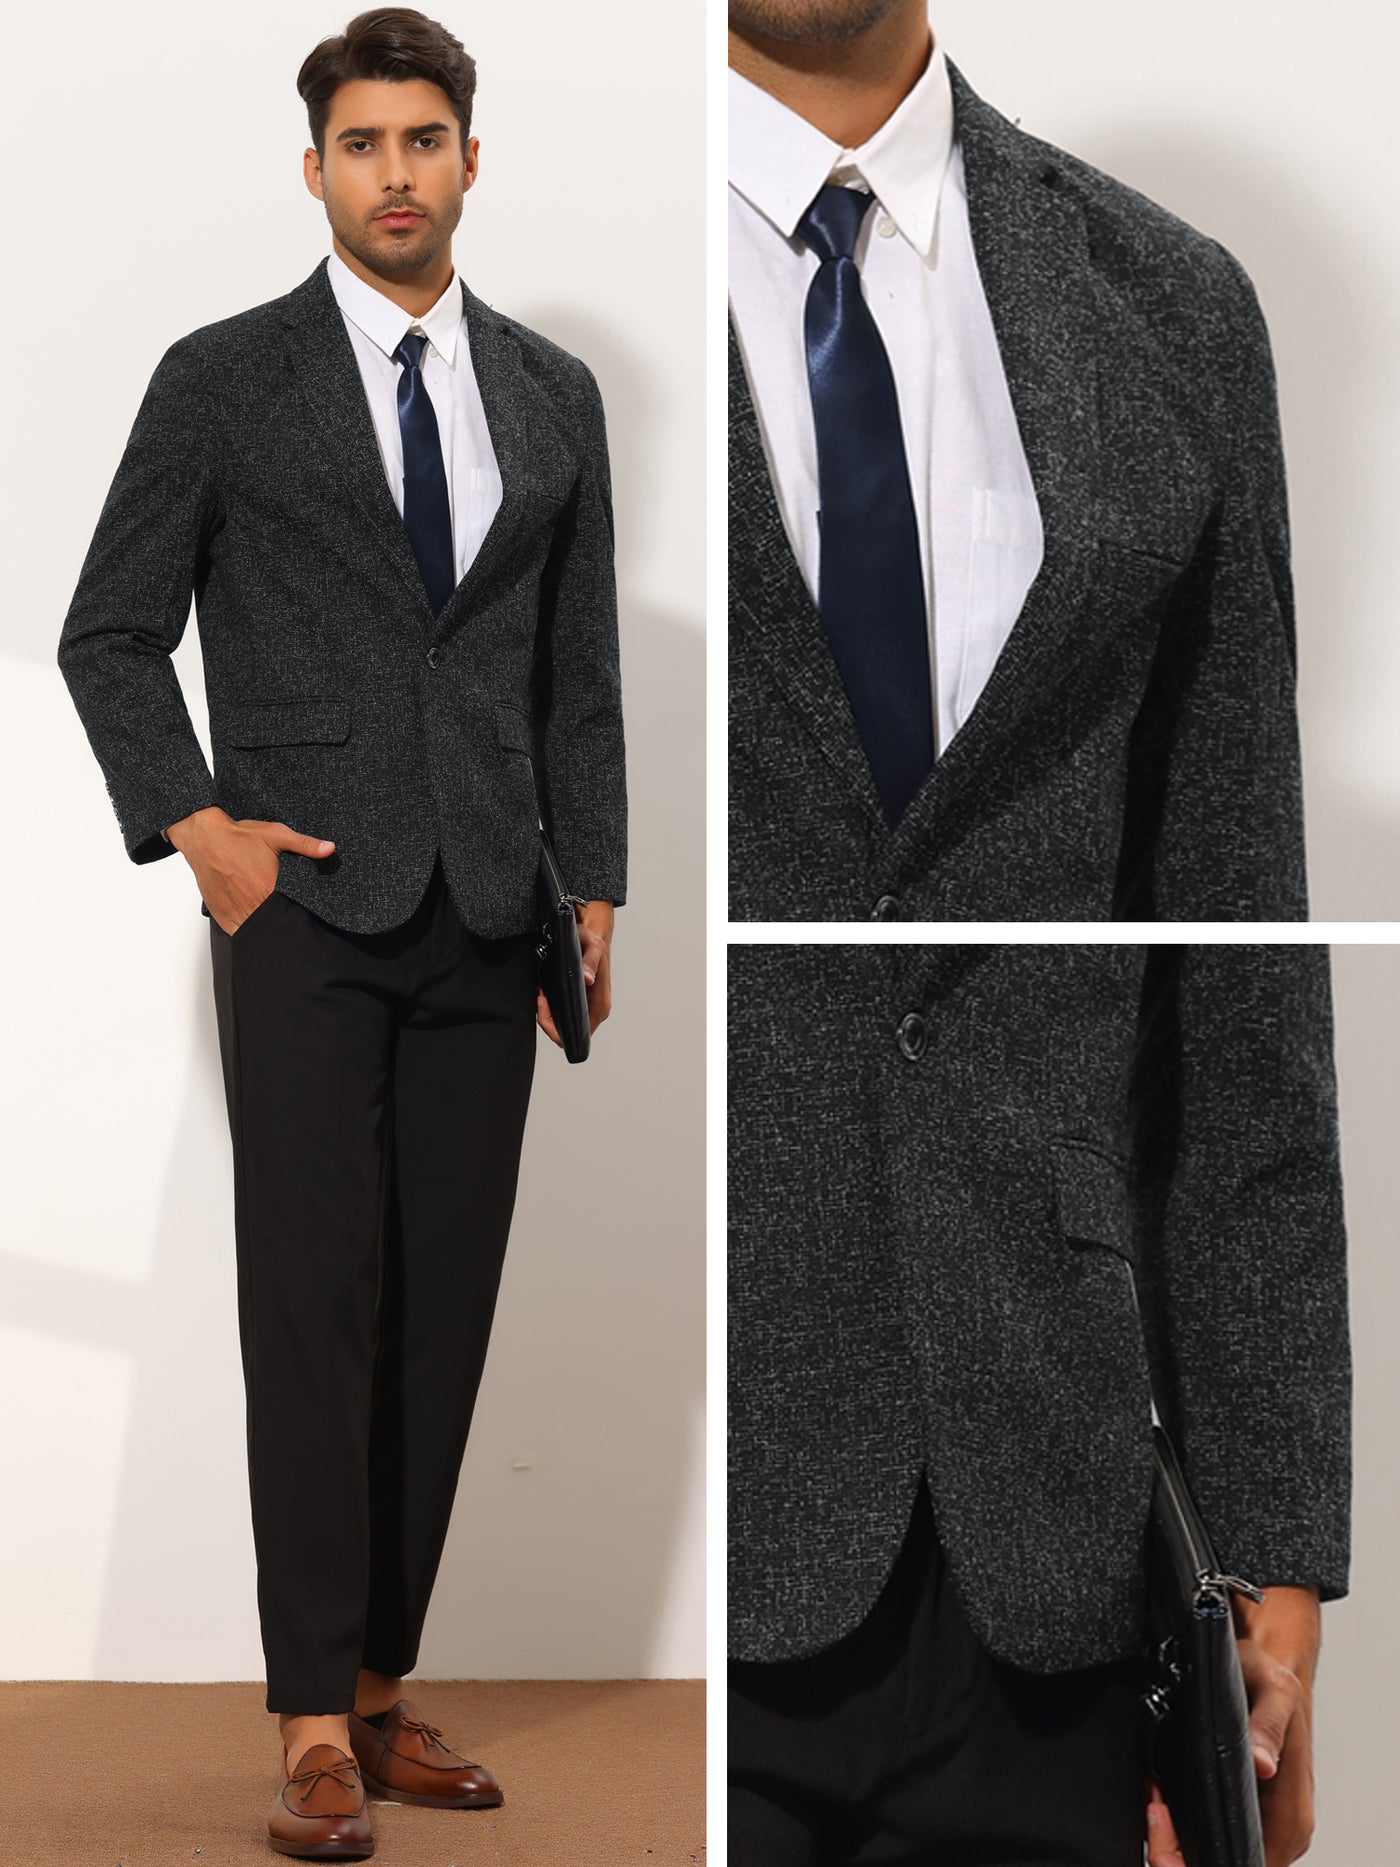 Bublédon Men's Blazer Slim Fit Notched Lapel Wedding Business Suit Jacket Sports Coat